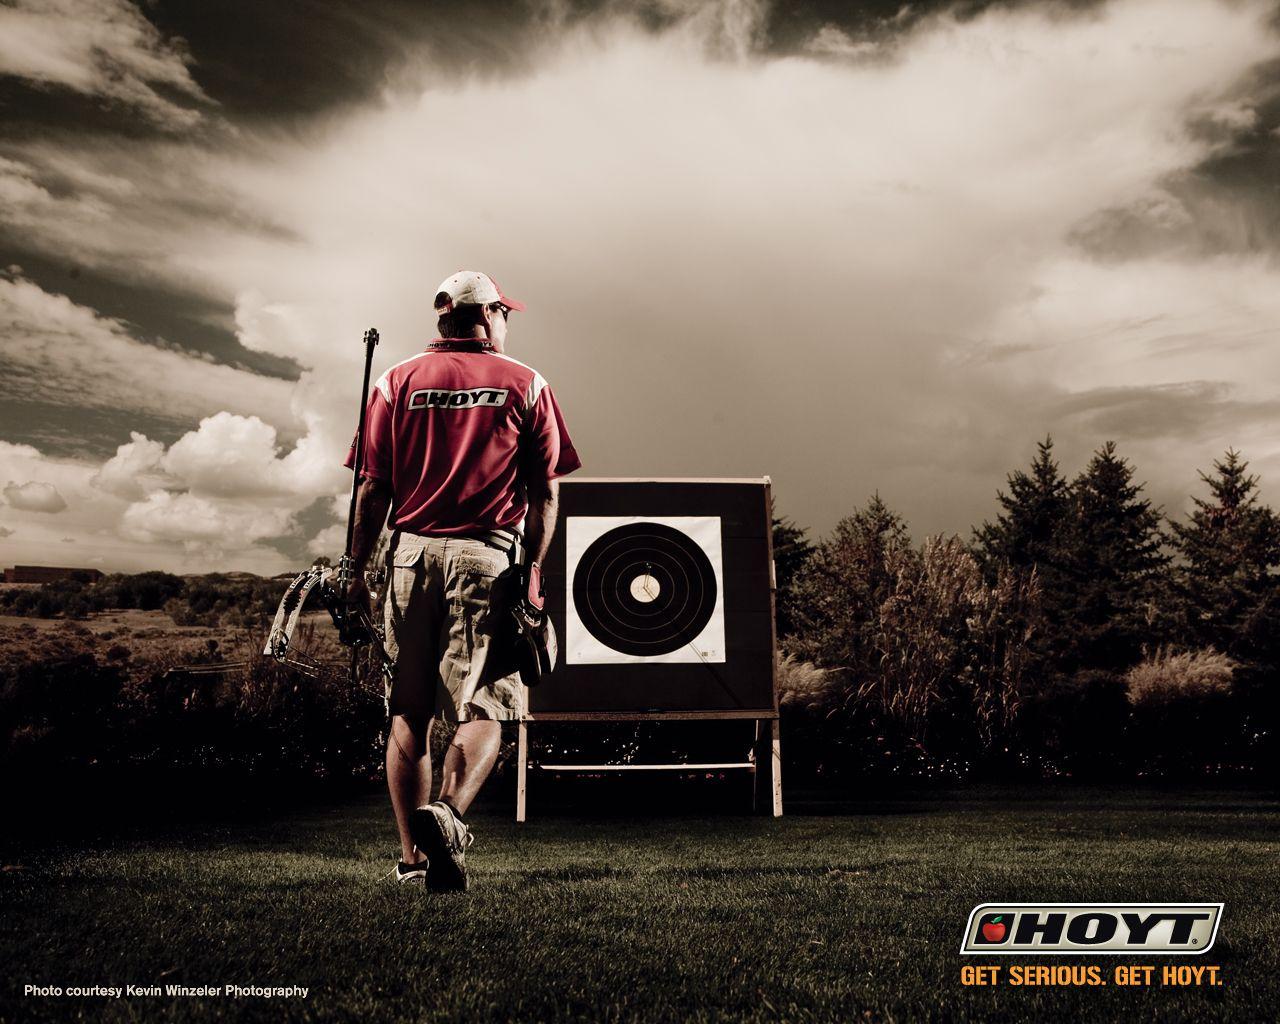 Archery #Hoyt. Hoyt Archery. Archery, Archery store